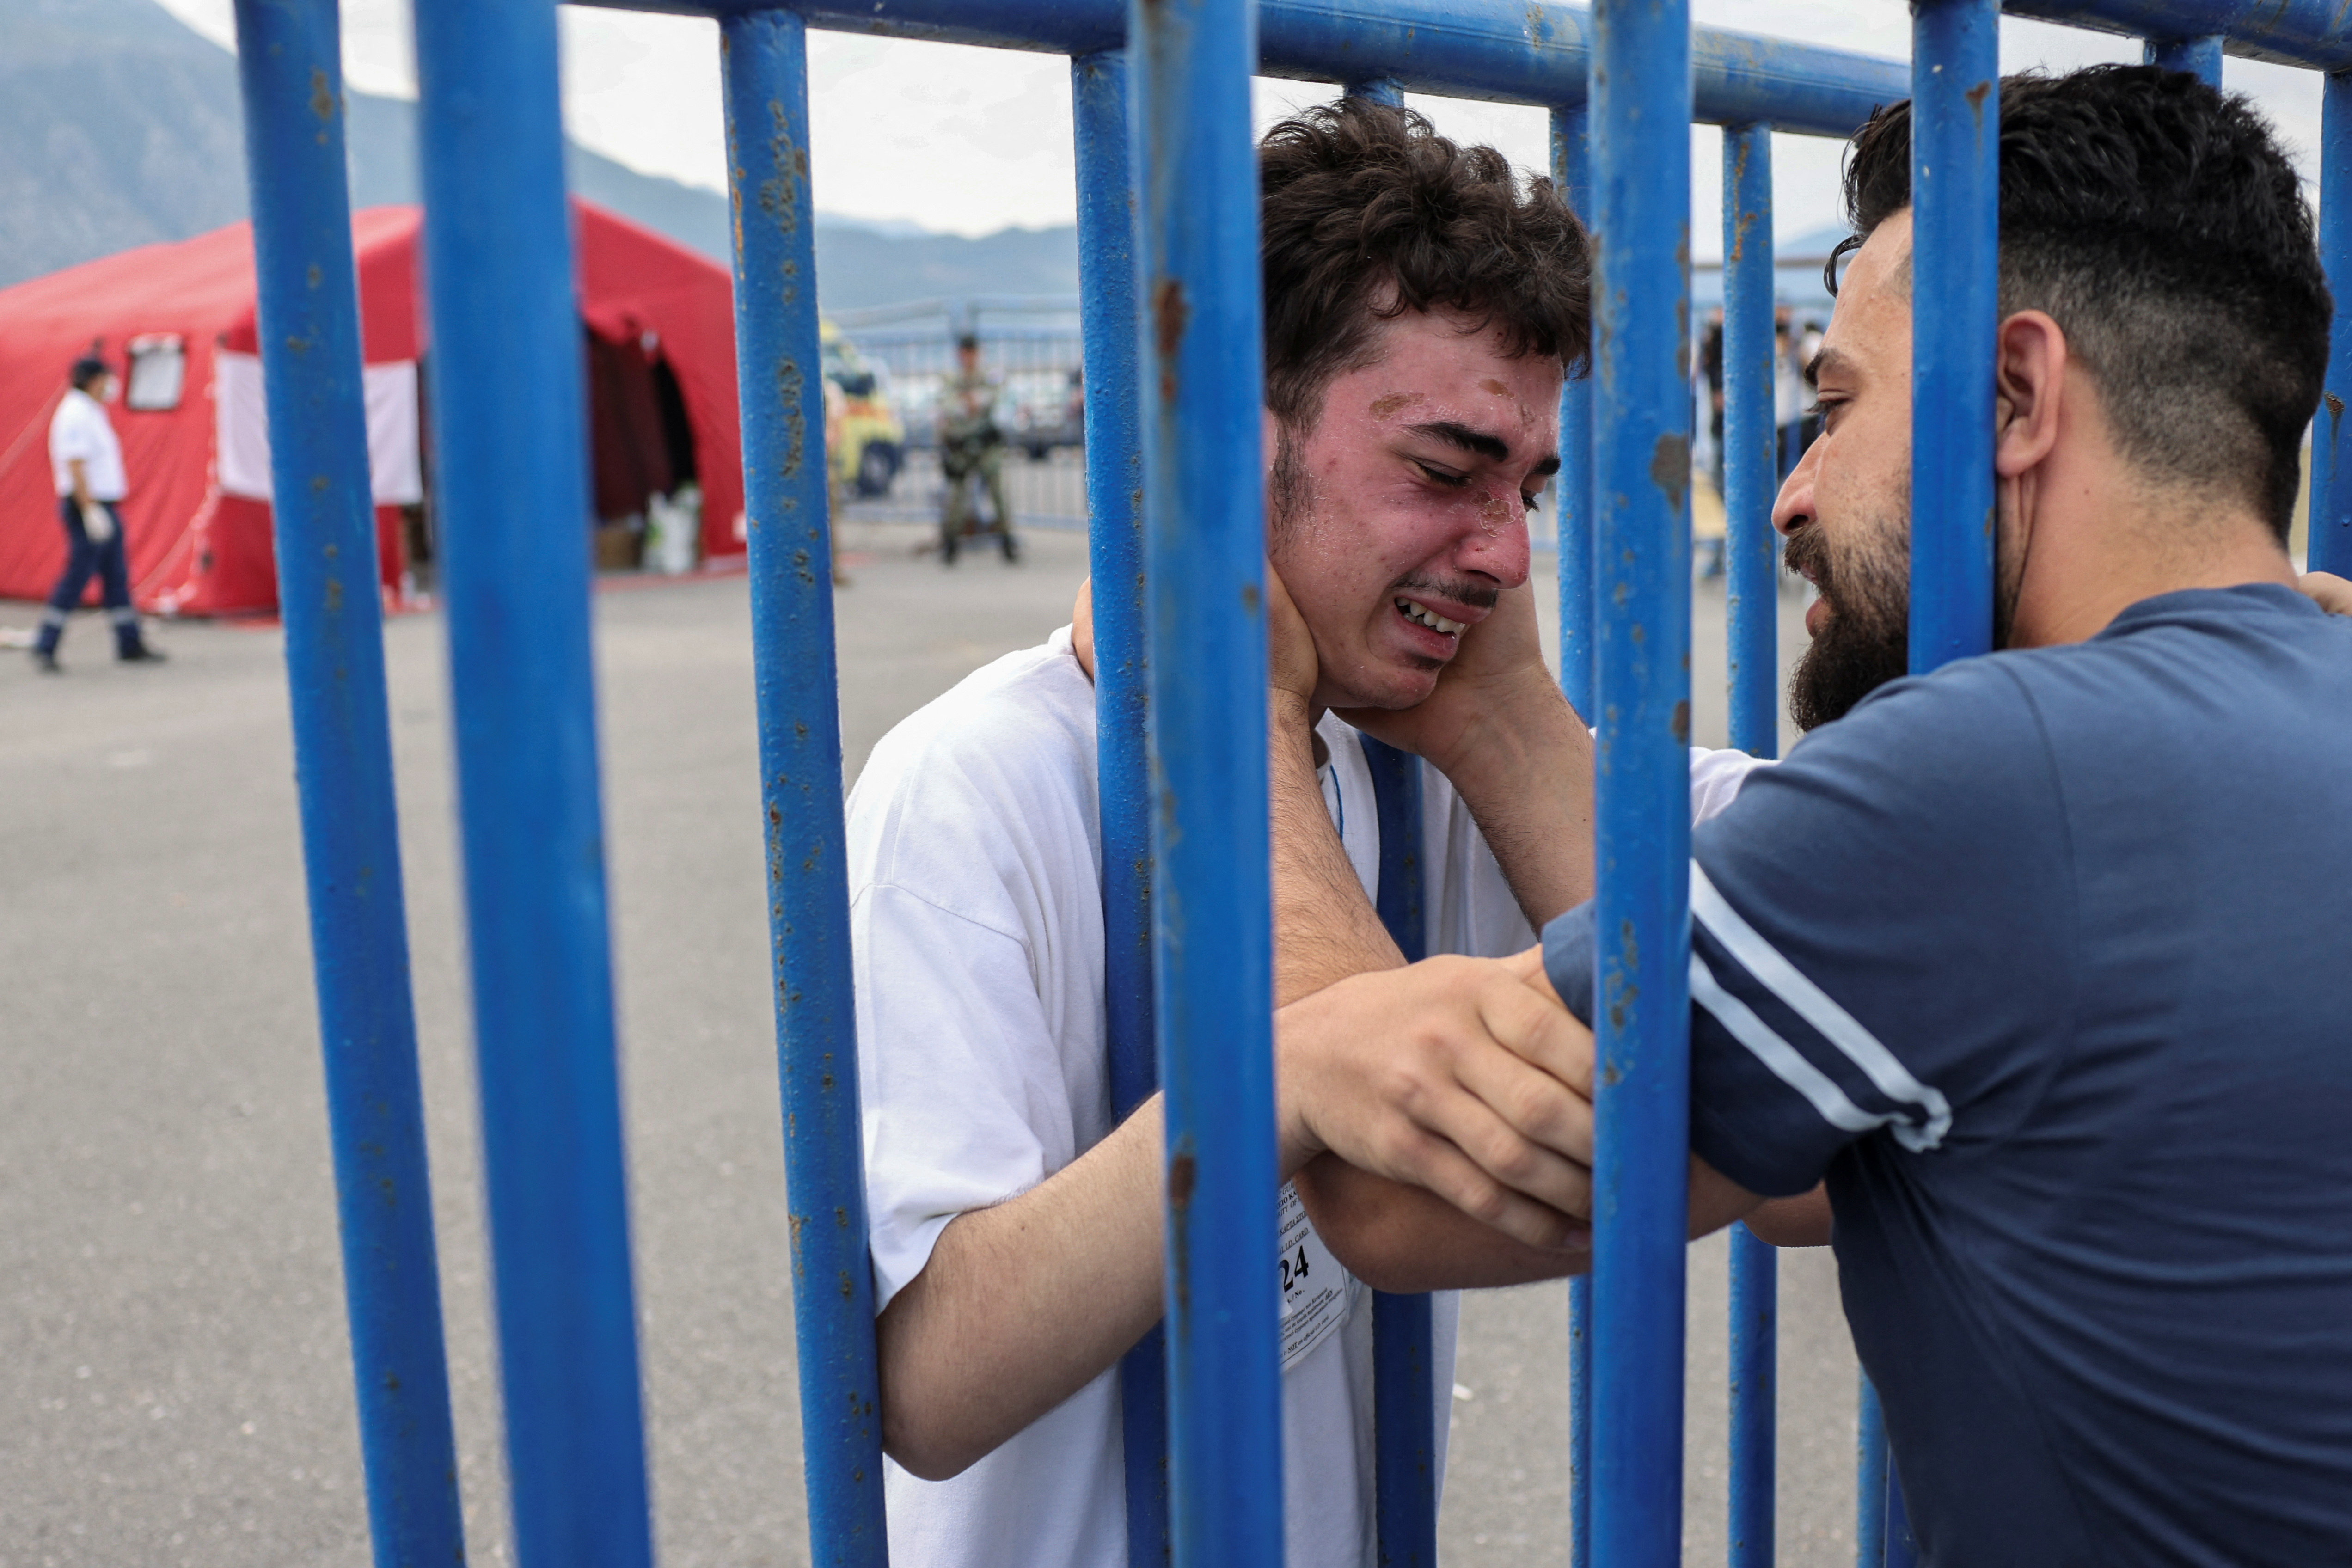 그리스 앞바다 난민선 침몰 사고의 생존자가 가족과 재회하며 울고 있다.